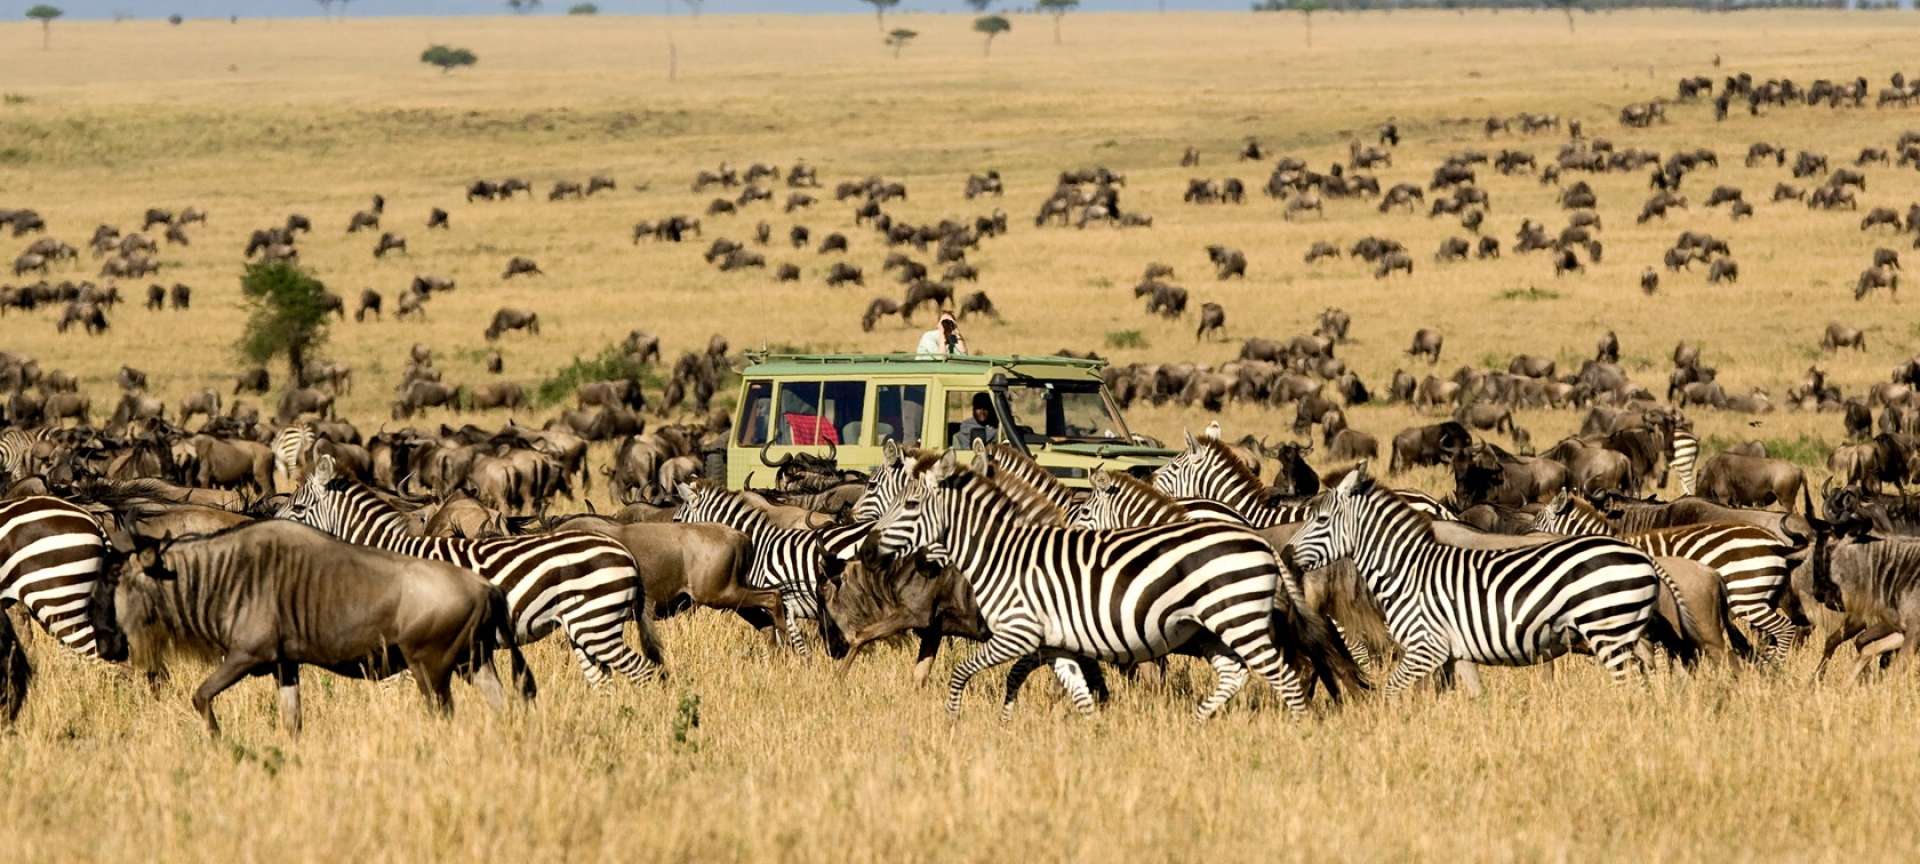 Migration safaris in Africa - Africa Wildlife Safaris